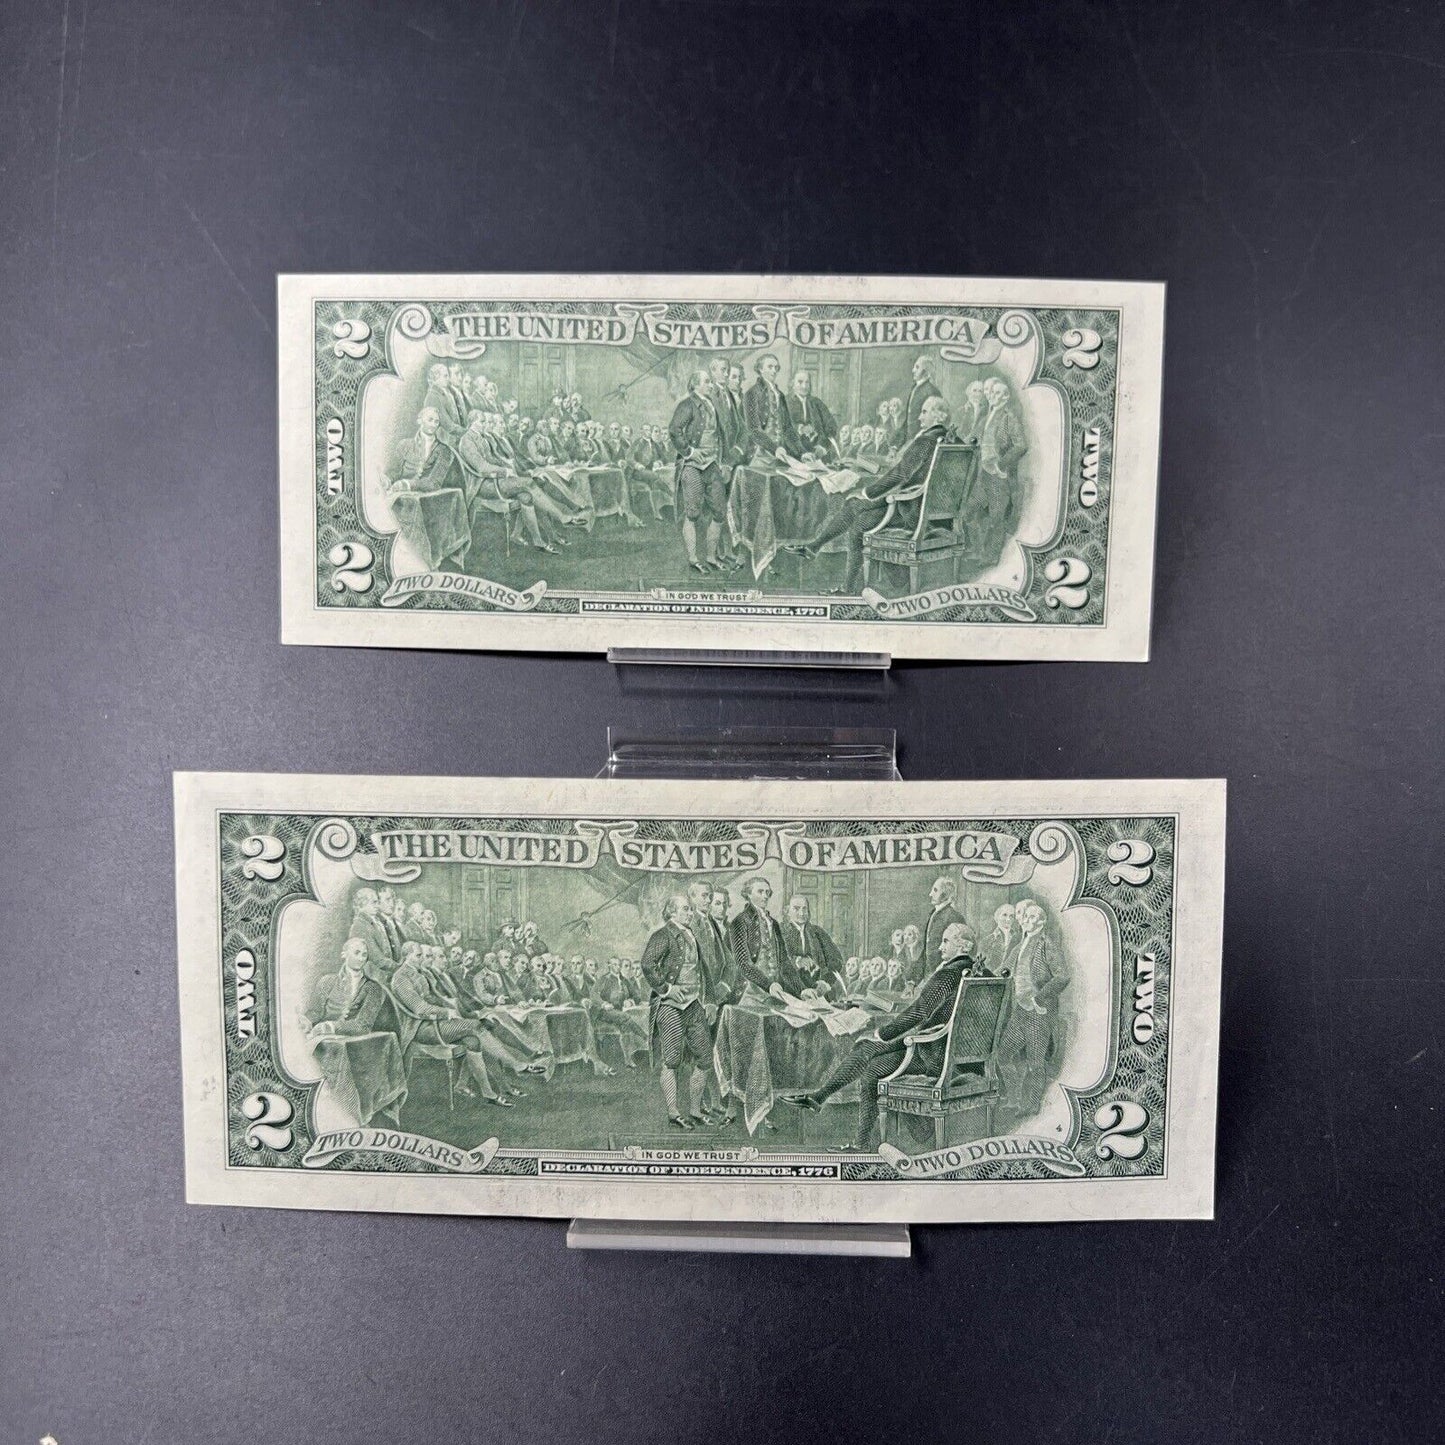 Two Fancy Serial # 2003 $2 FRN Federal Reserve Two Dollar Bill Choice AU